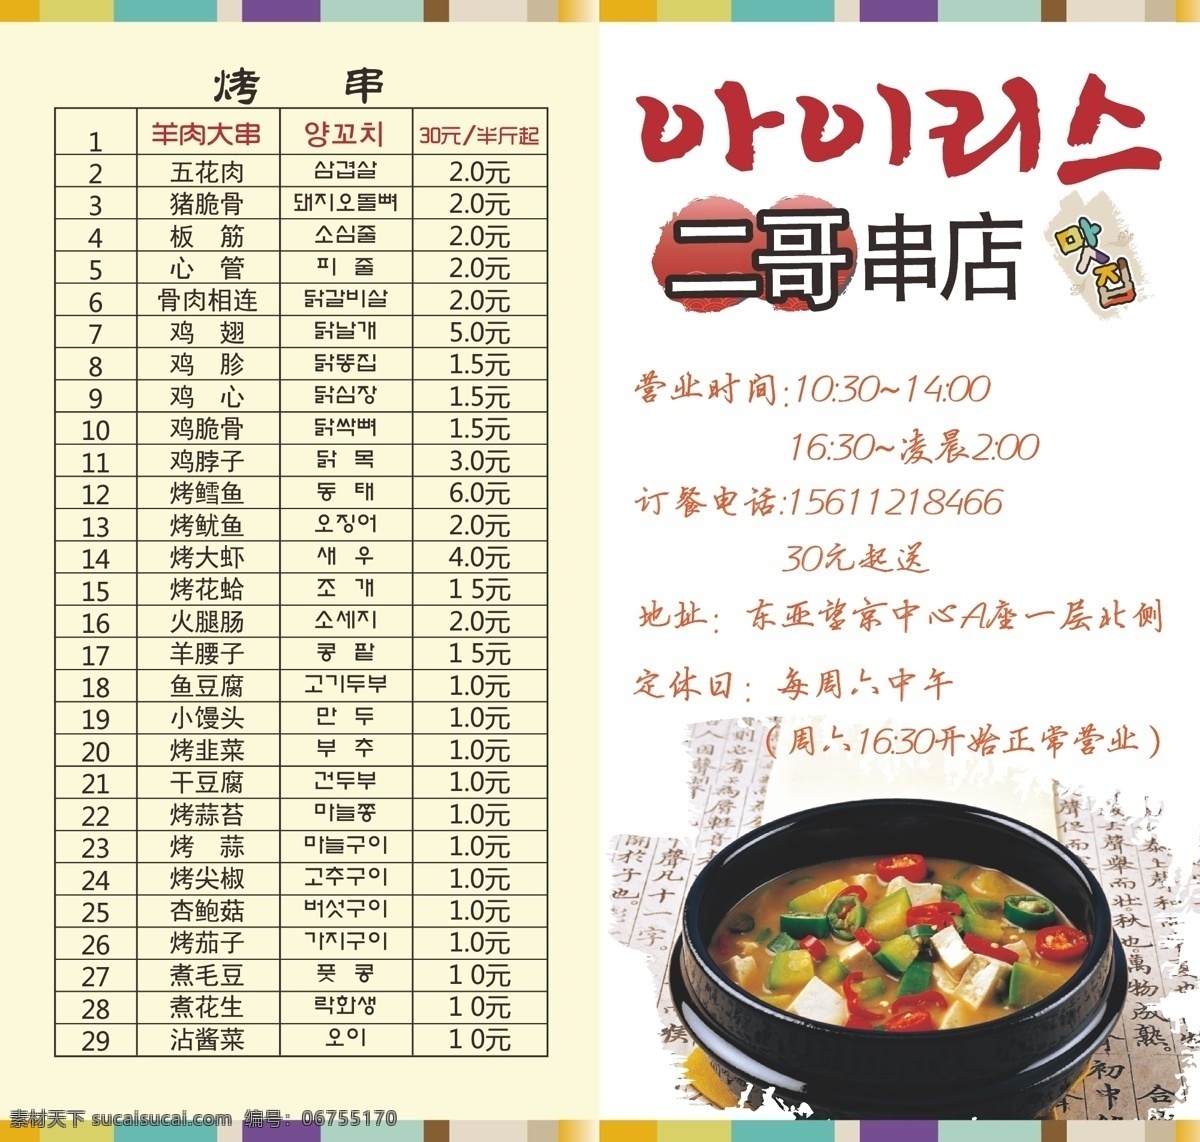 饭店单页设计 单页 dm单 饭店烤串 烤串单页 韩国 韩国烧烤 菜单 白色